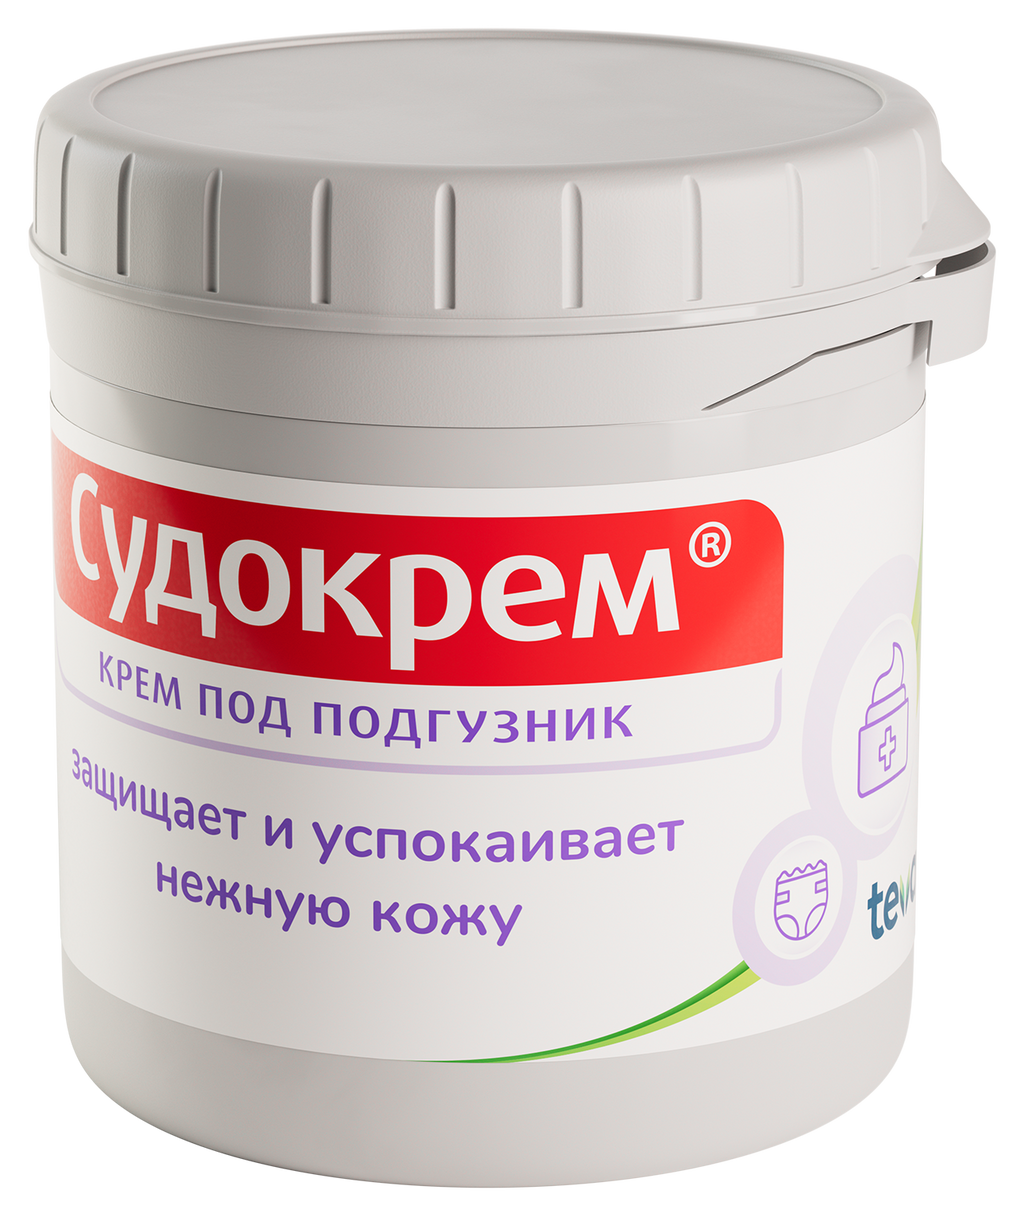 Судокрем, крем для наружного применения, 125 г, 1 шт.